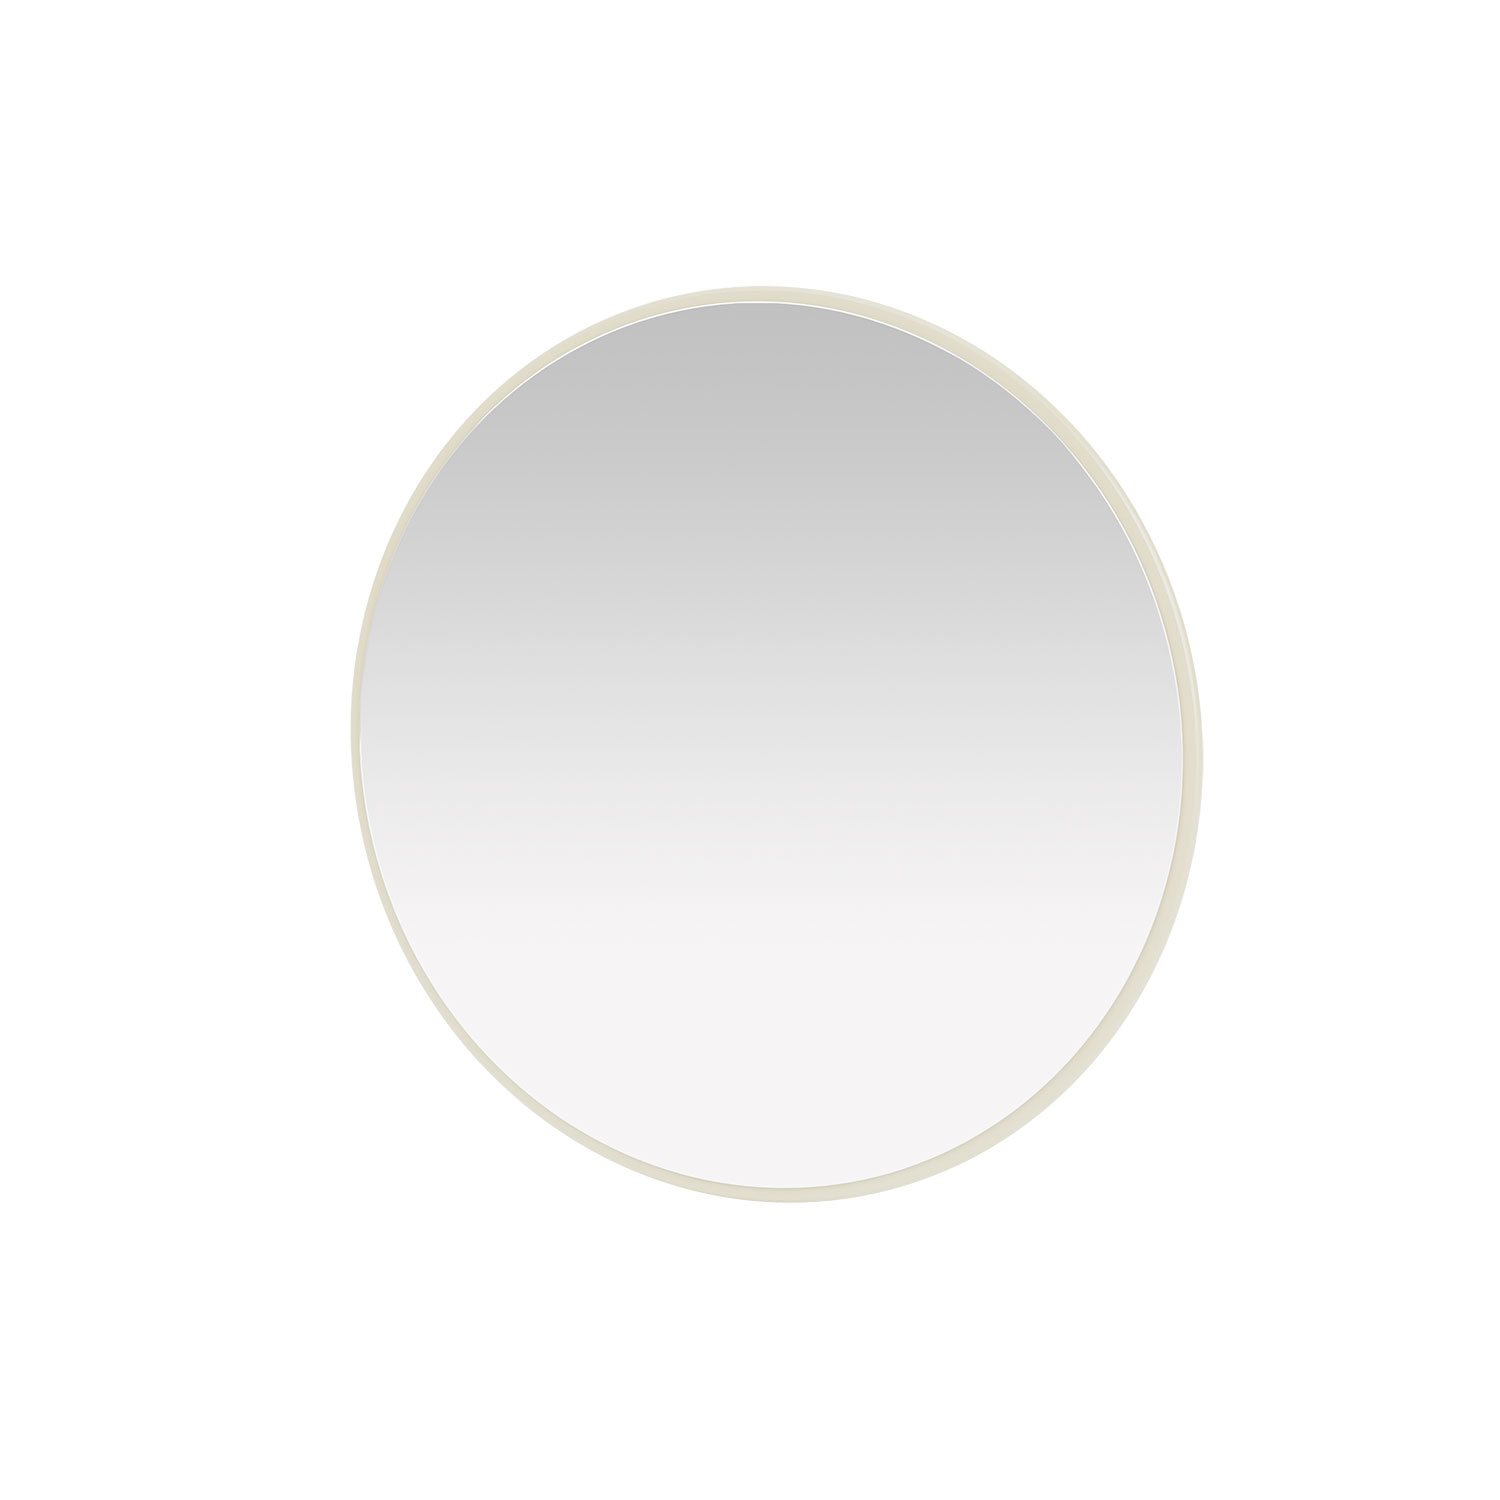 AROUND mirror, Vanilla